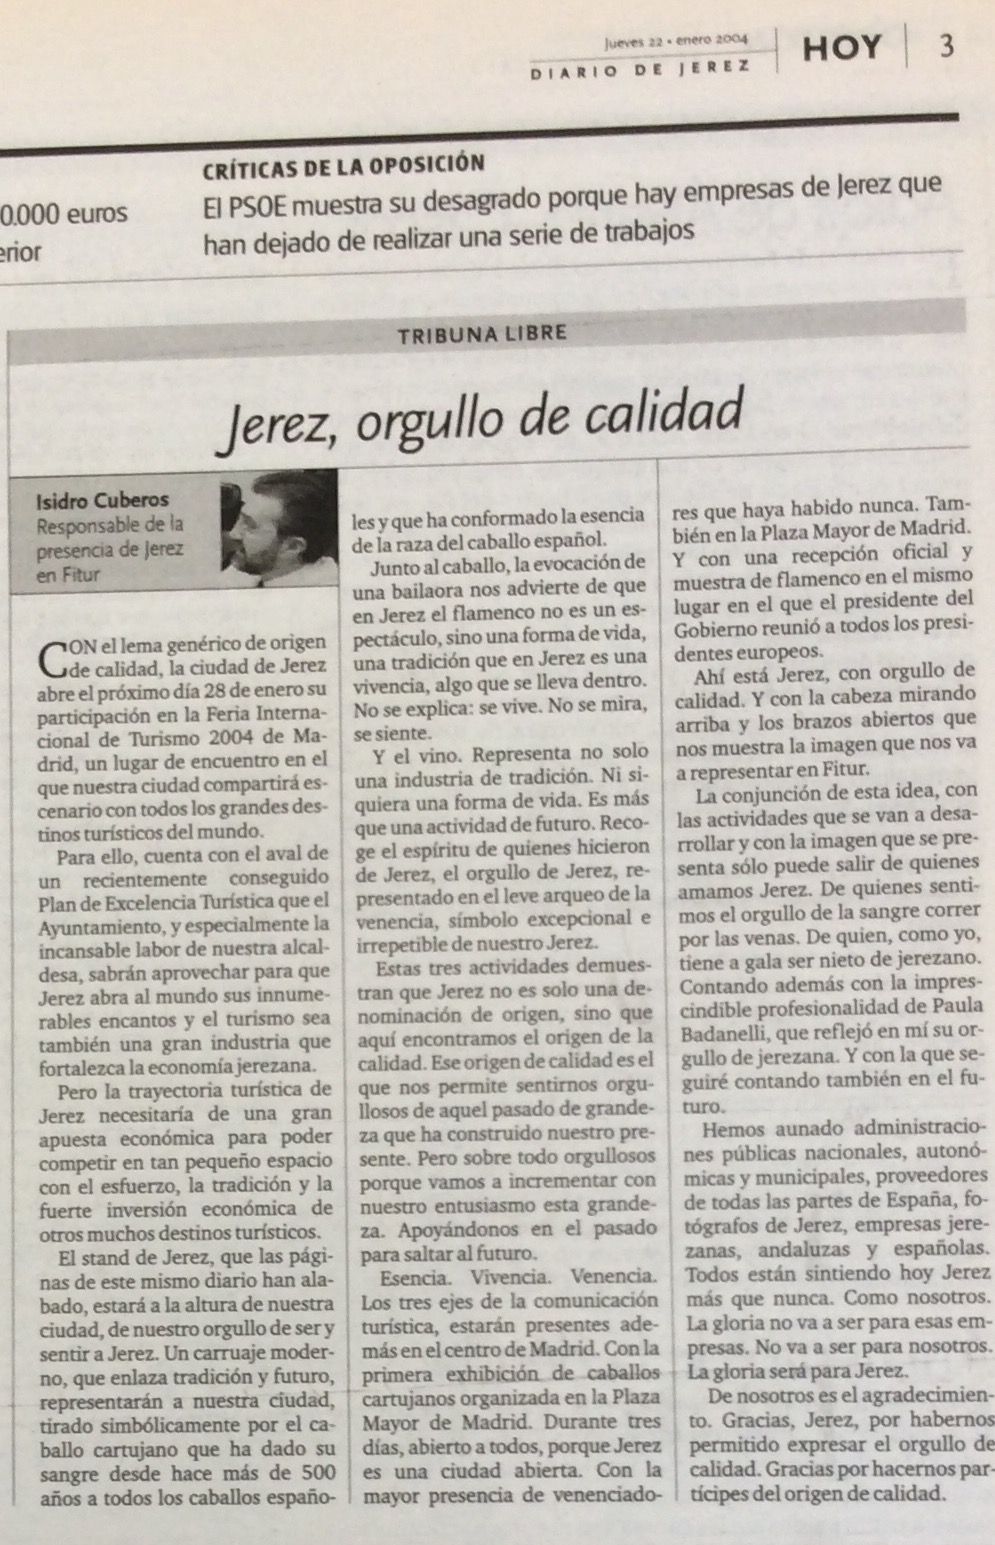 Tribuna publicada por Isidro Cuberos sobre Fitur 2004